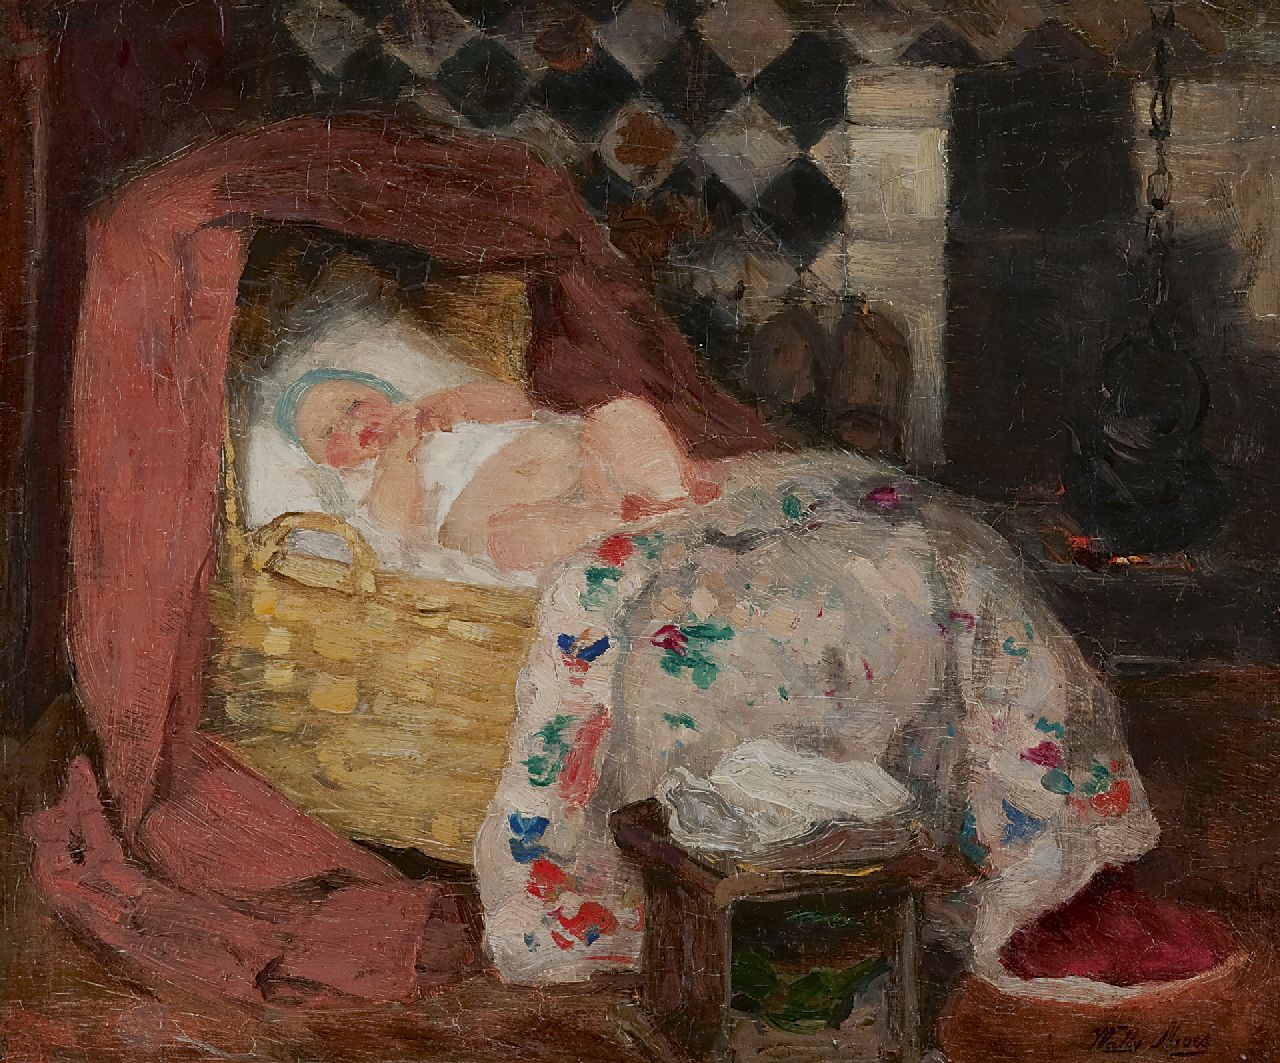 Wally Moes | Larens interieur met baby in wieg, olieverf op doek, 34,7 x 41,3 cm, gesigneerd r.o.